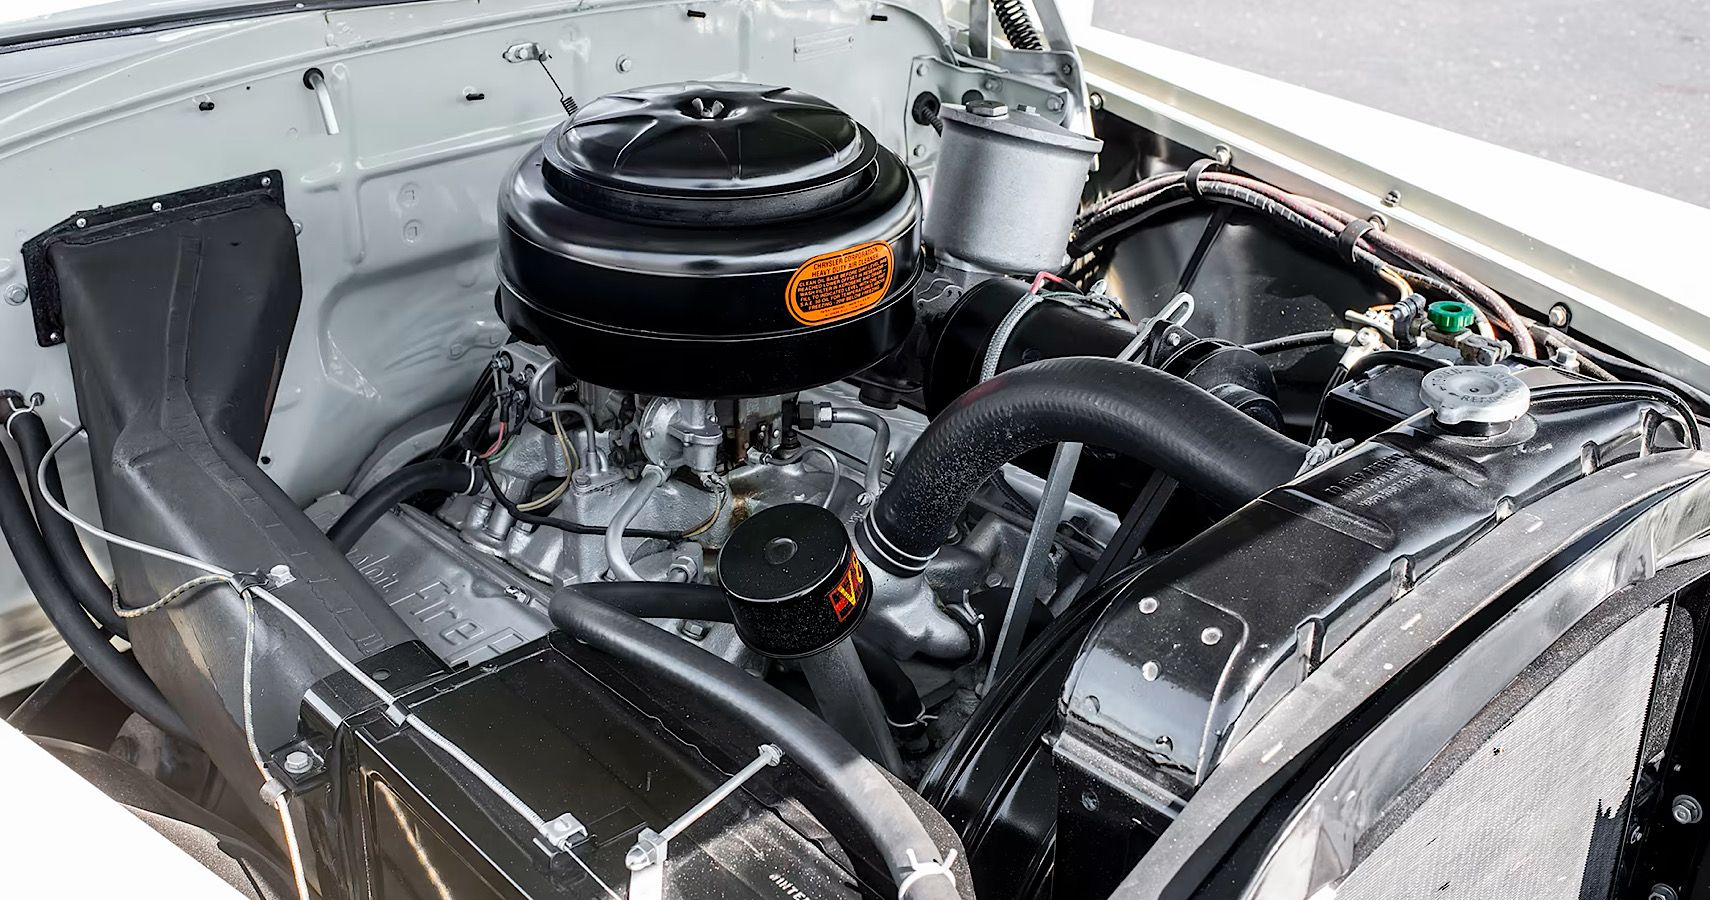 1951 Chrysler Firepower V8 Hemi Engine